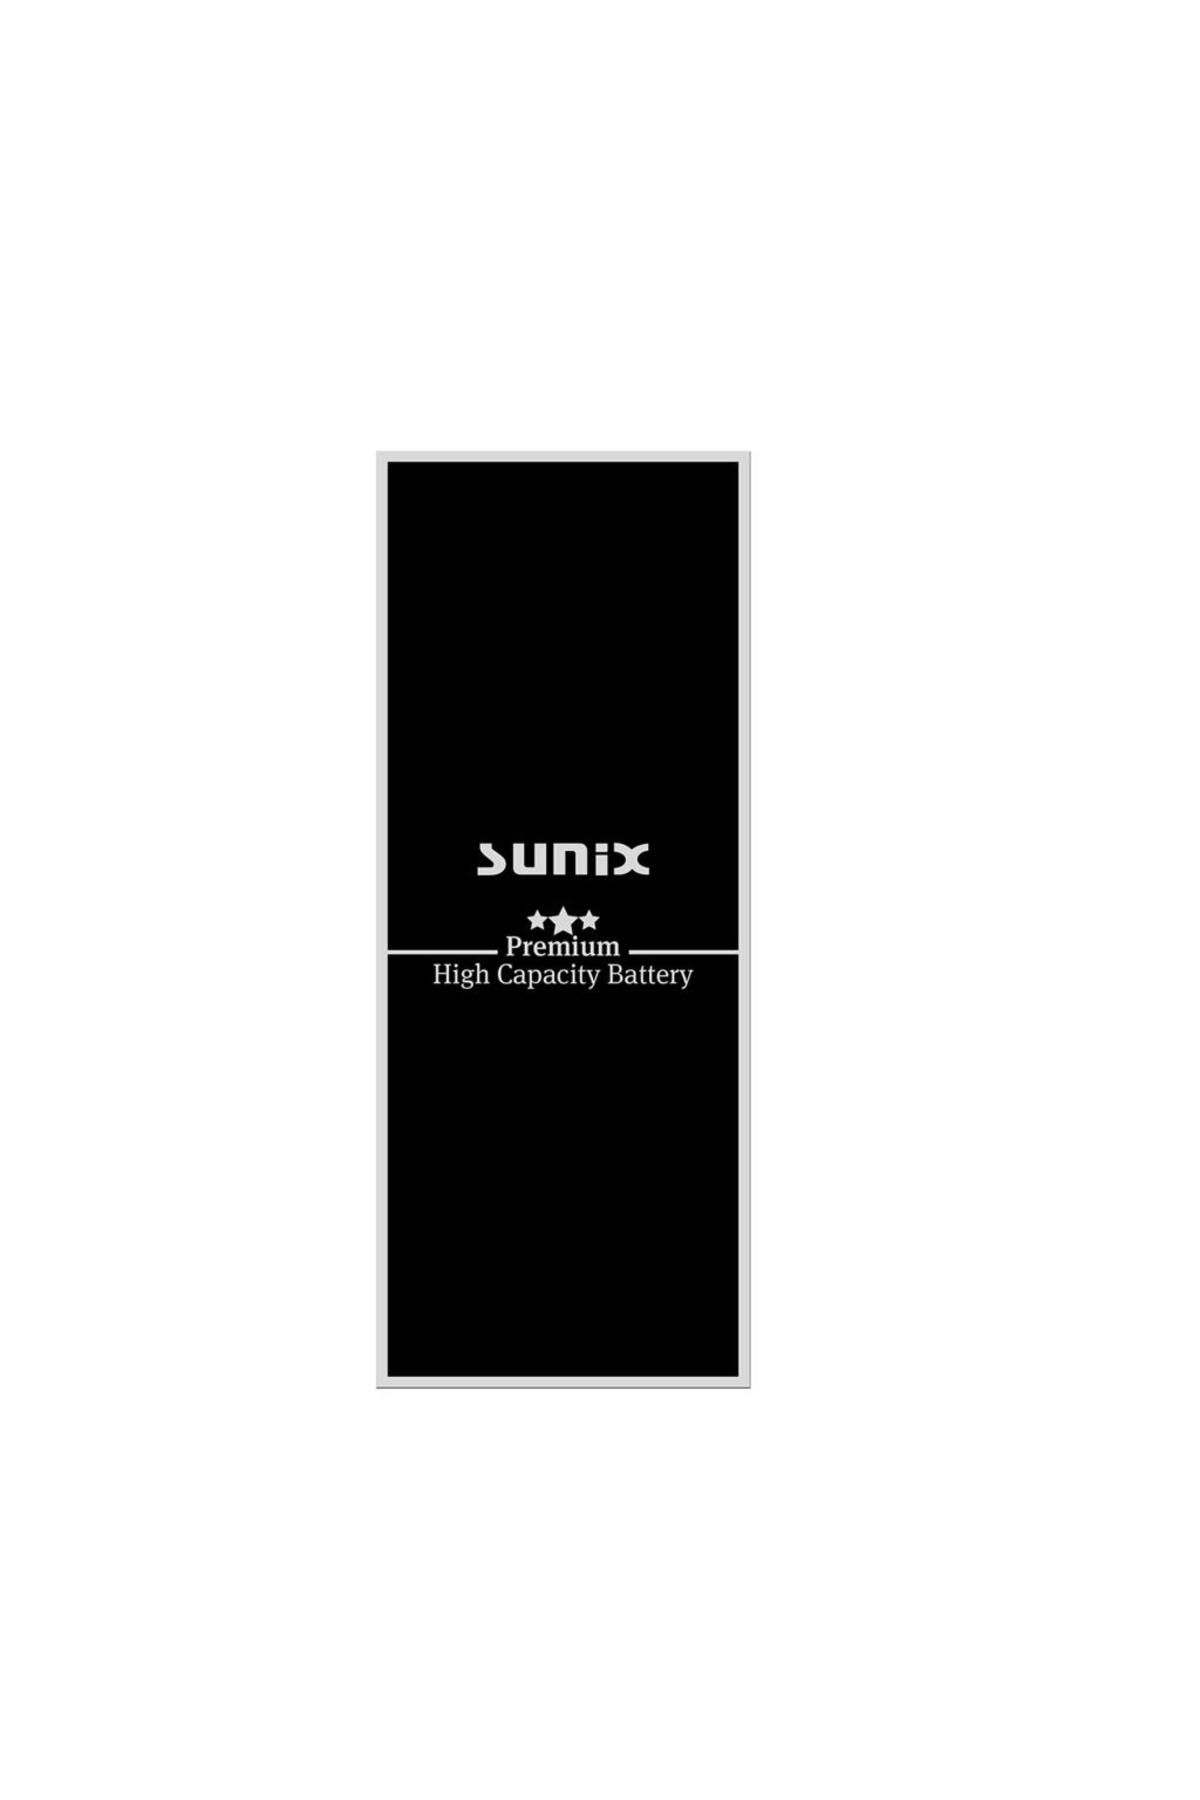 Sunix İphone Xs Max Ile Uyumlu Premium Güçlendirilmiş Yüksek Kapasiteli Batarya